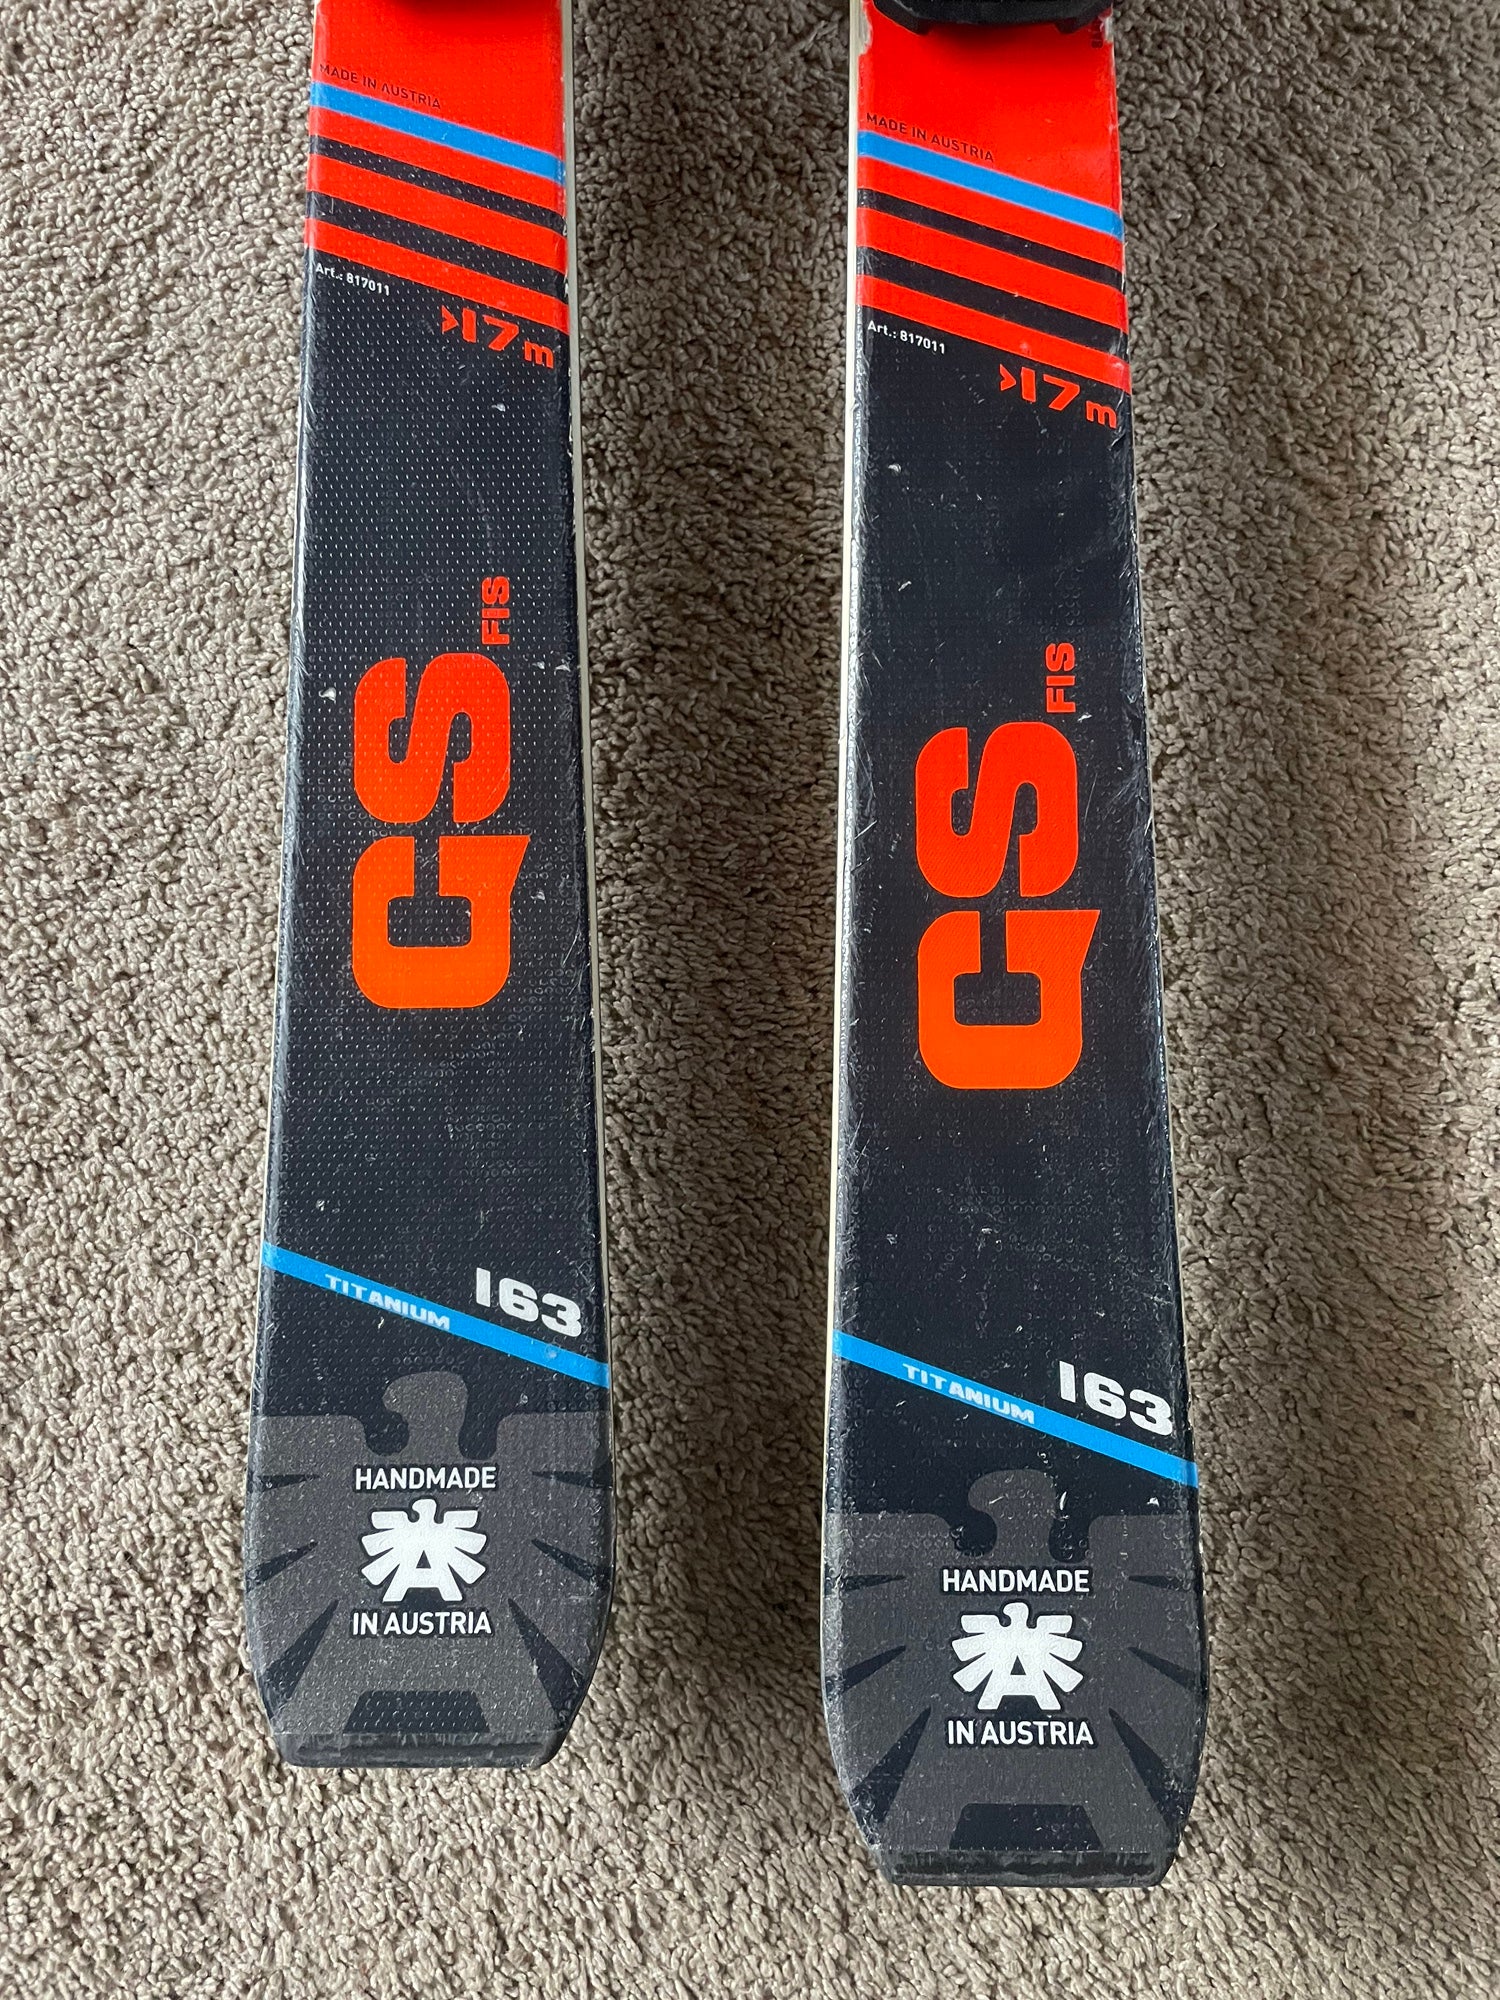 スキーブリザード GS FIS 163 - スキー